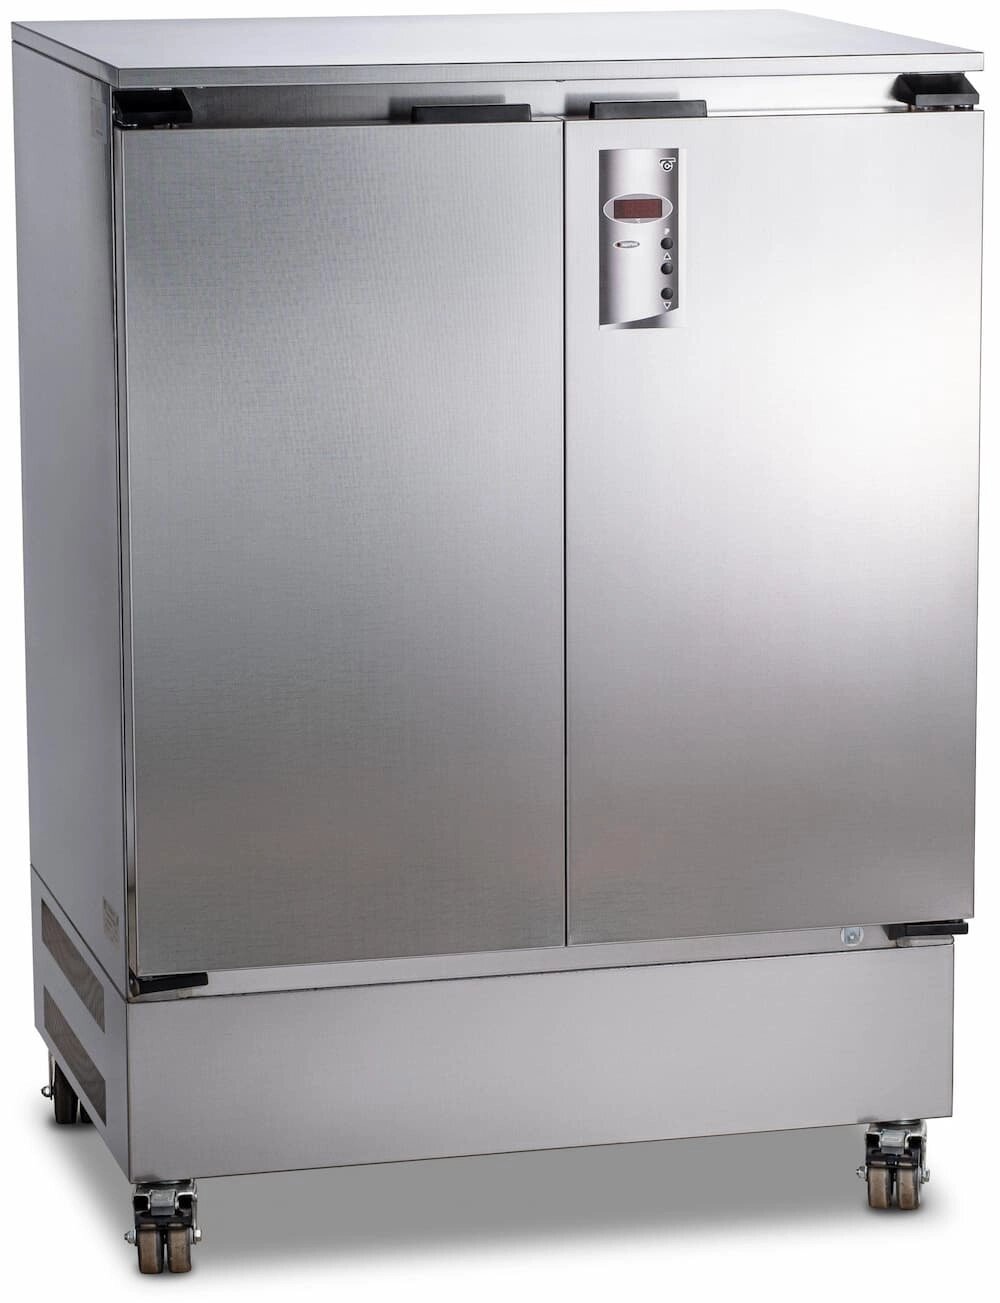 Суховоздушный термостат, 200 литров, 5-60 °С, с охлаждением, нержавеющая сталь от компании Labdevices - Лабораторное оборудование и посуда - фото 1